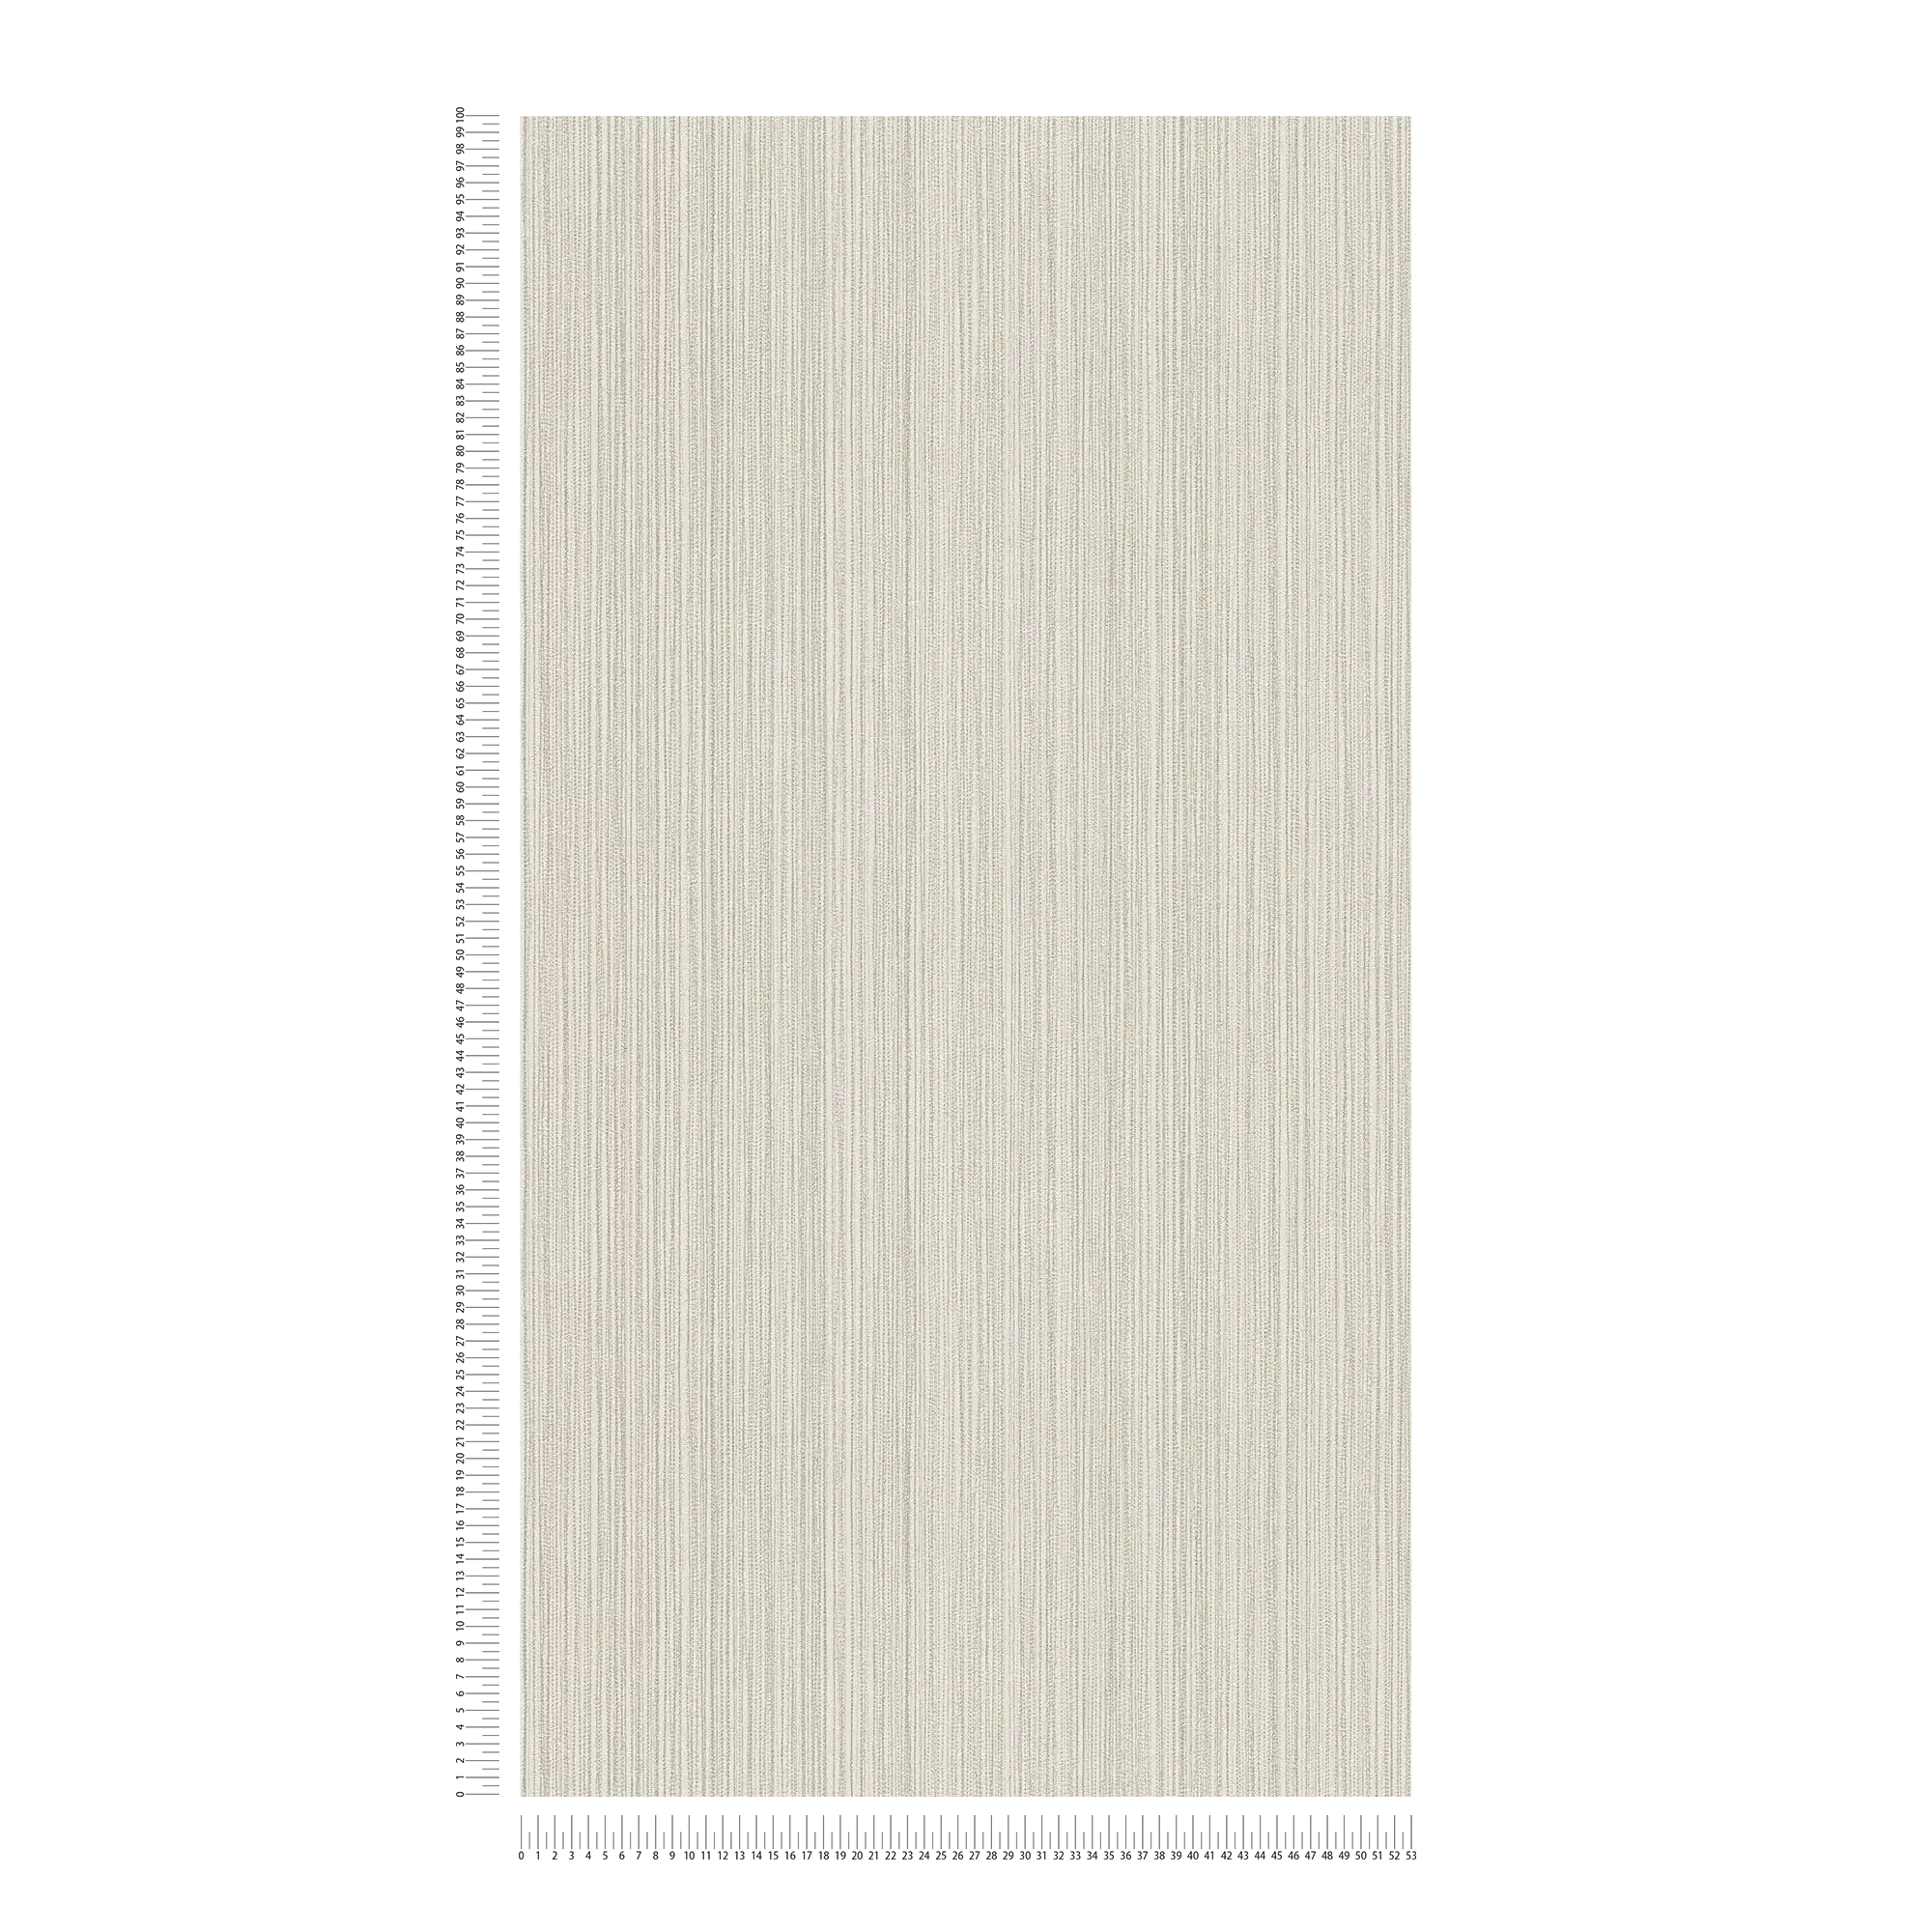             Papier peint uni gris clair avec un motif de lignes fines
        